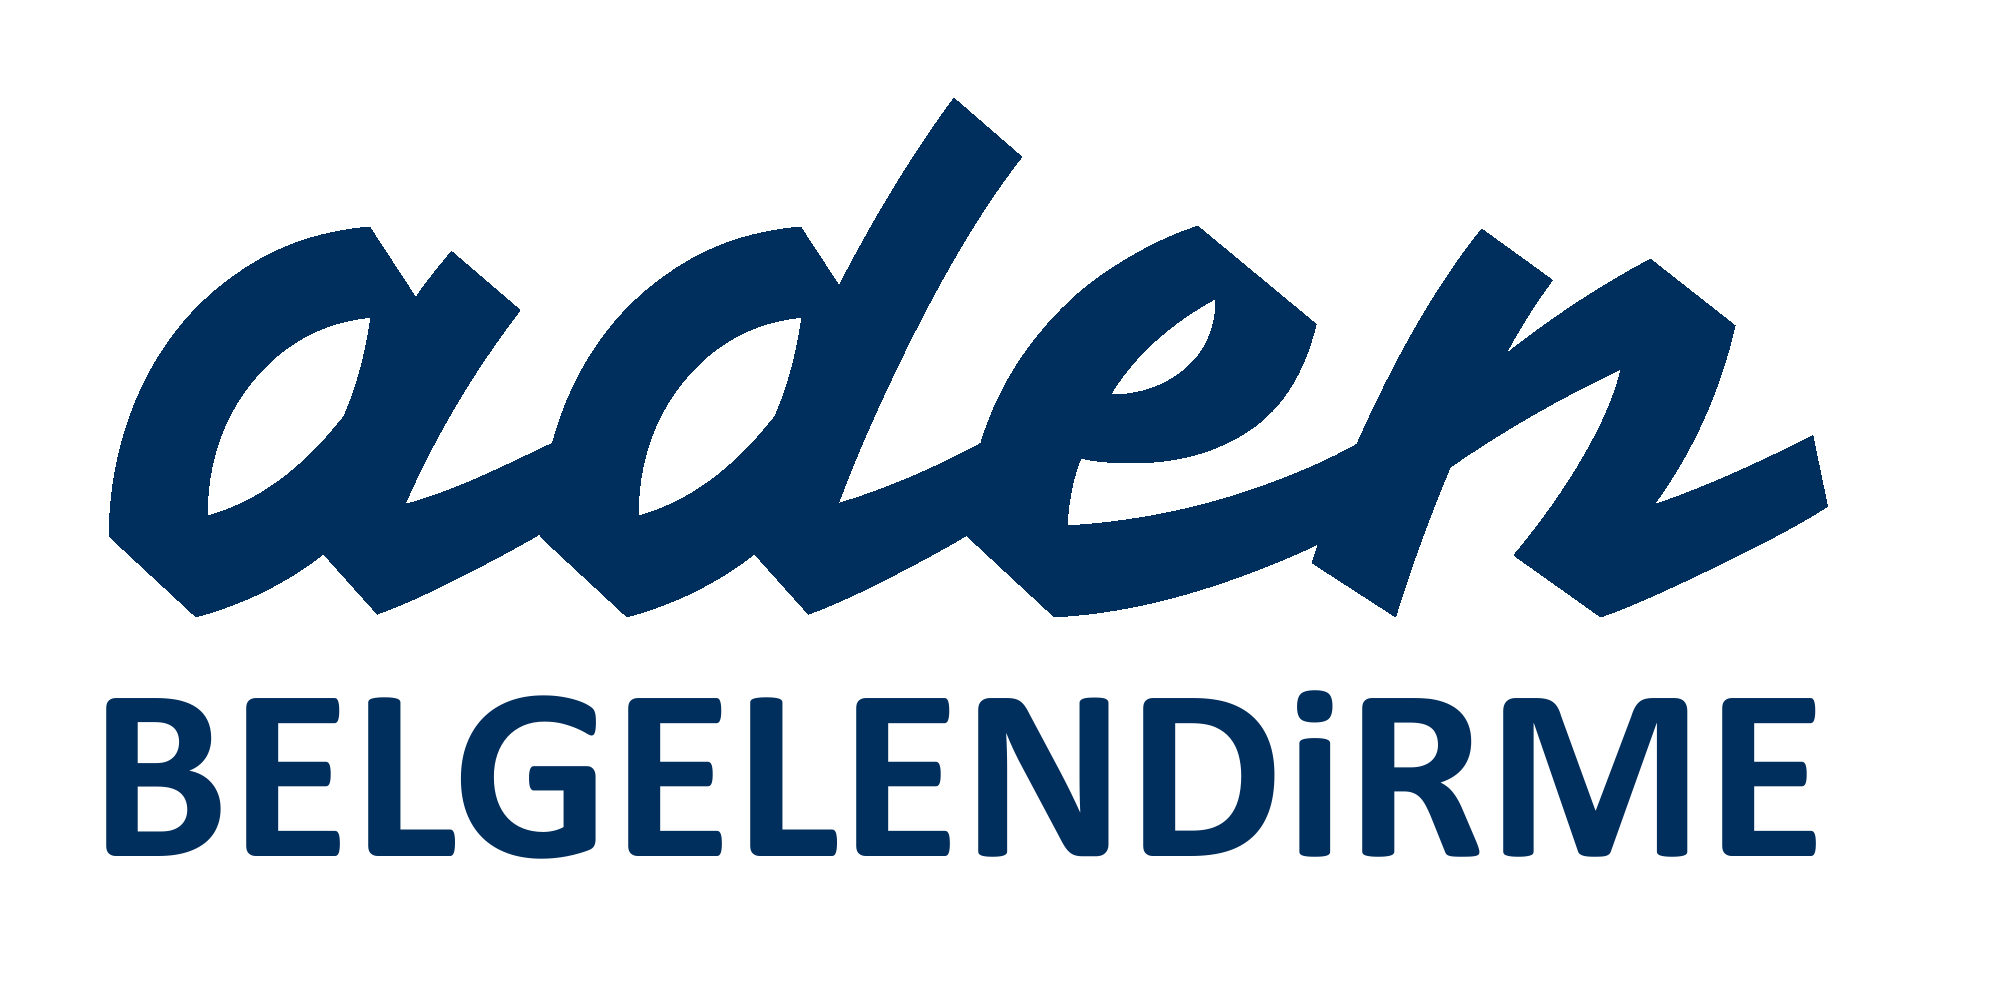 Aden Logo